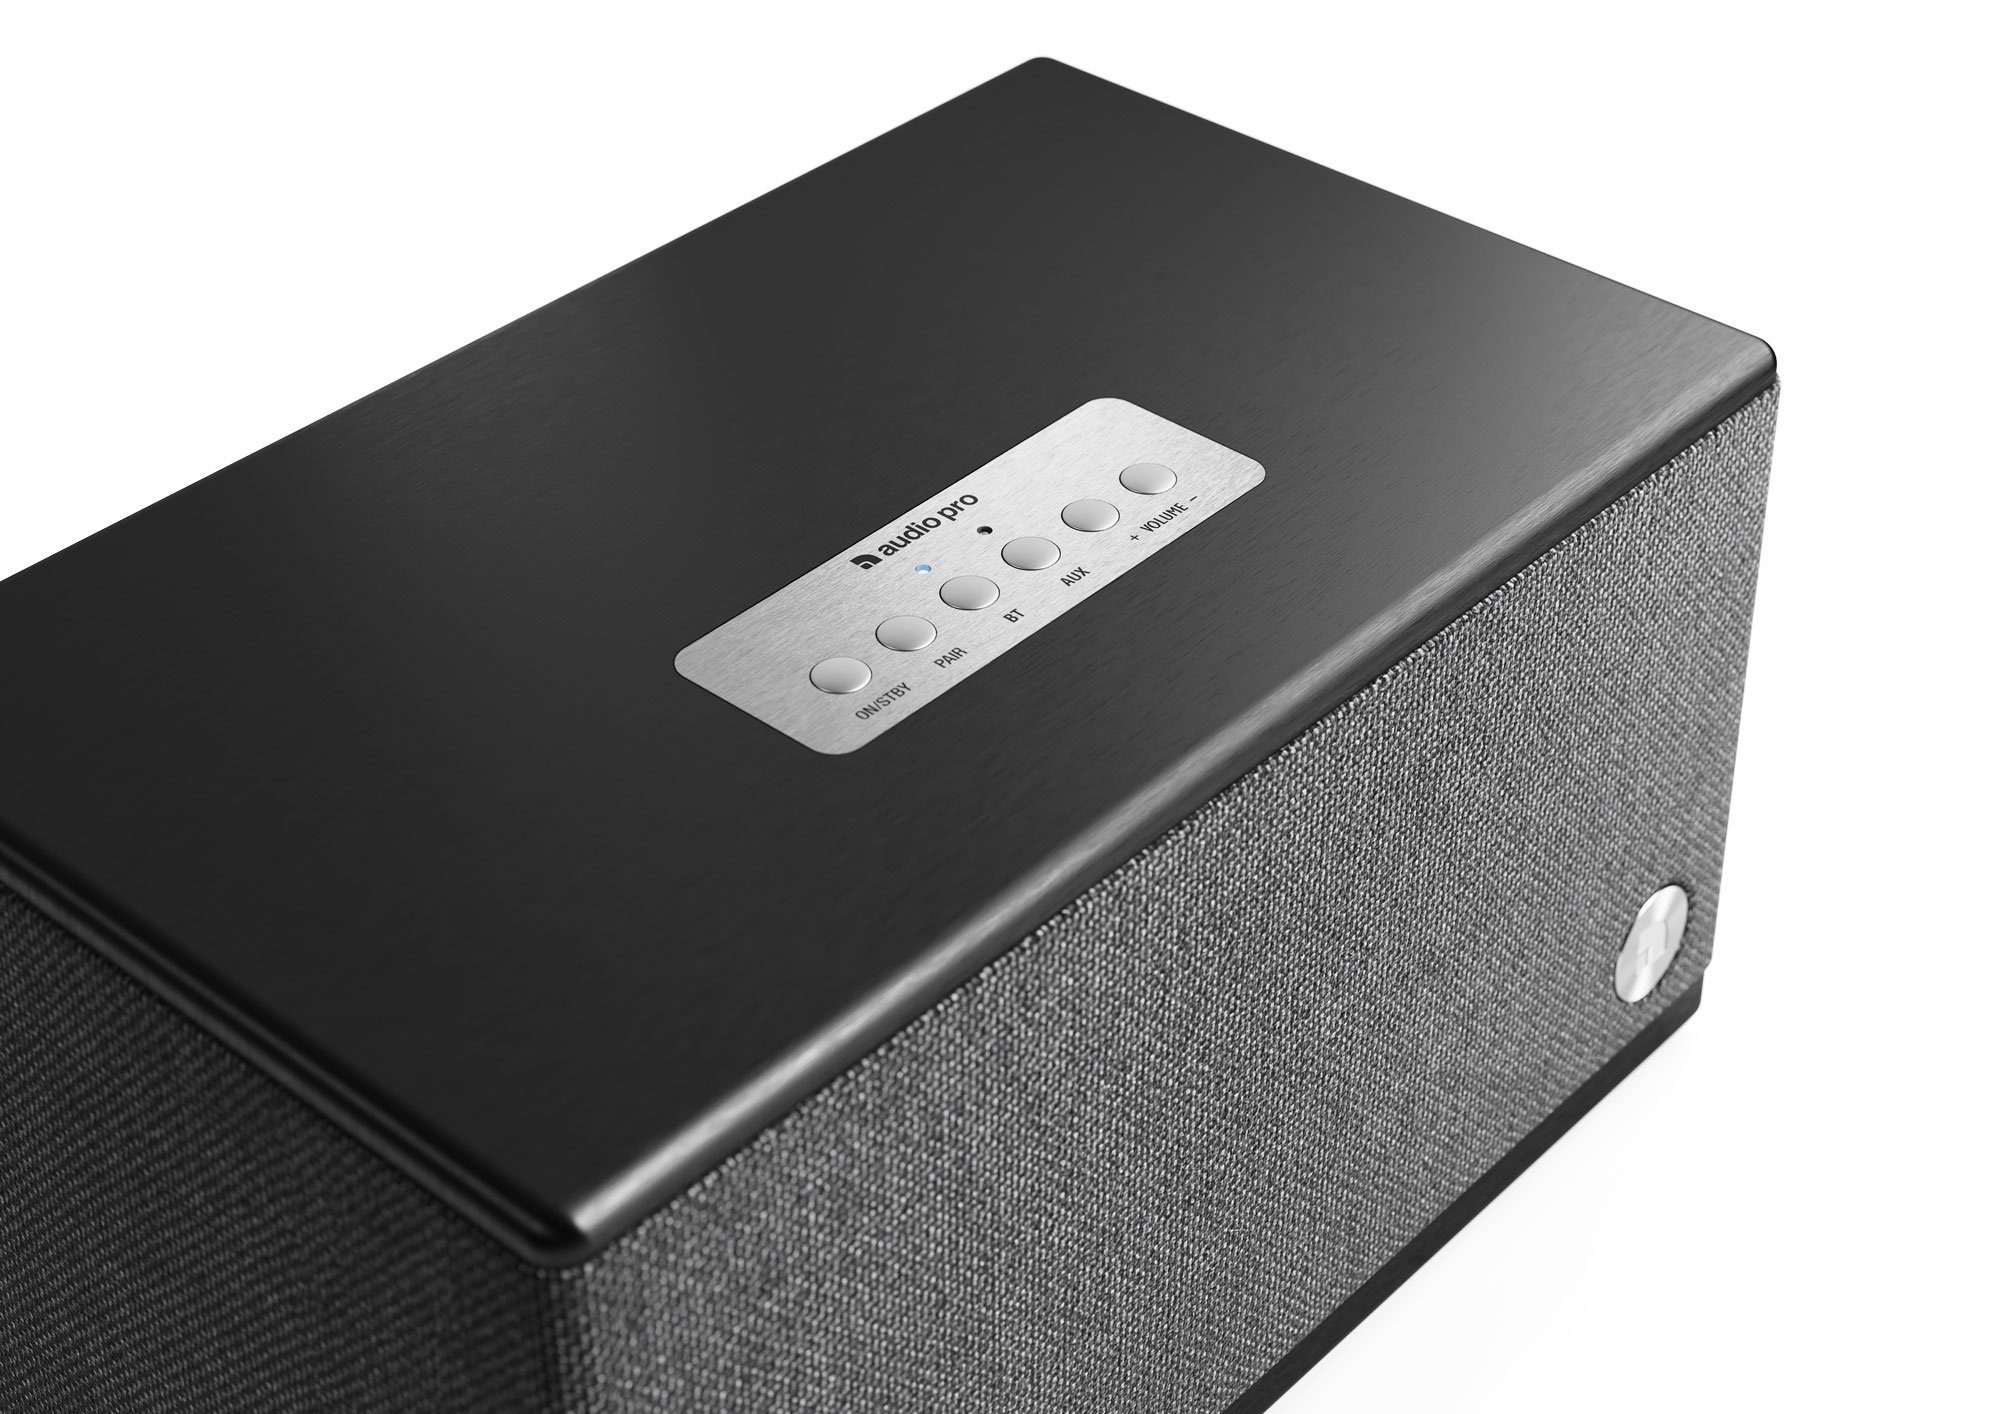 Audio Pro Audio Pro (Bluetooth, BT5 Schwarz einer Stereo-Klang Bluetooth-Lautsprecher aus Box)